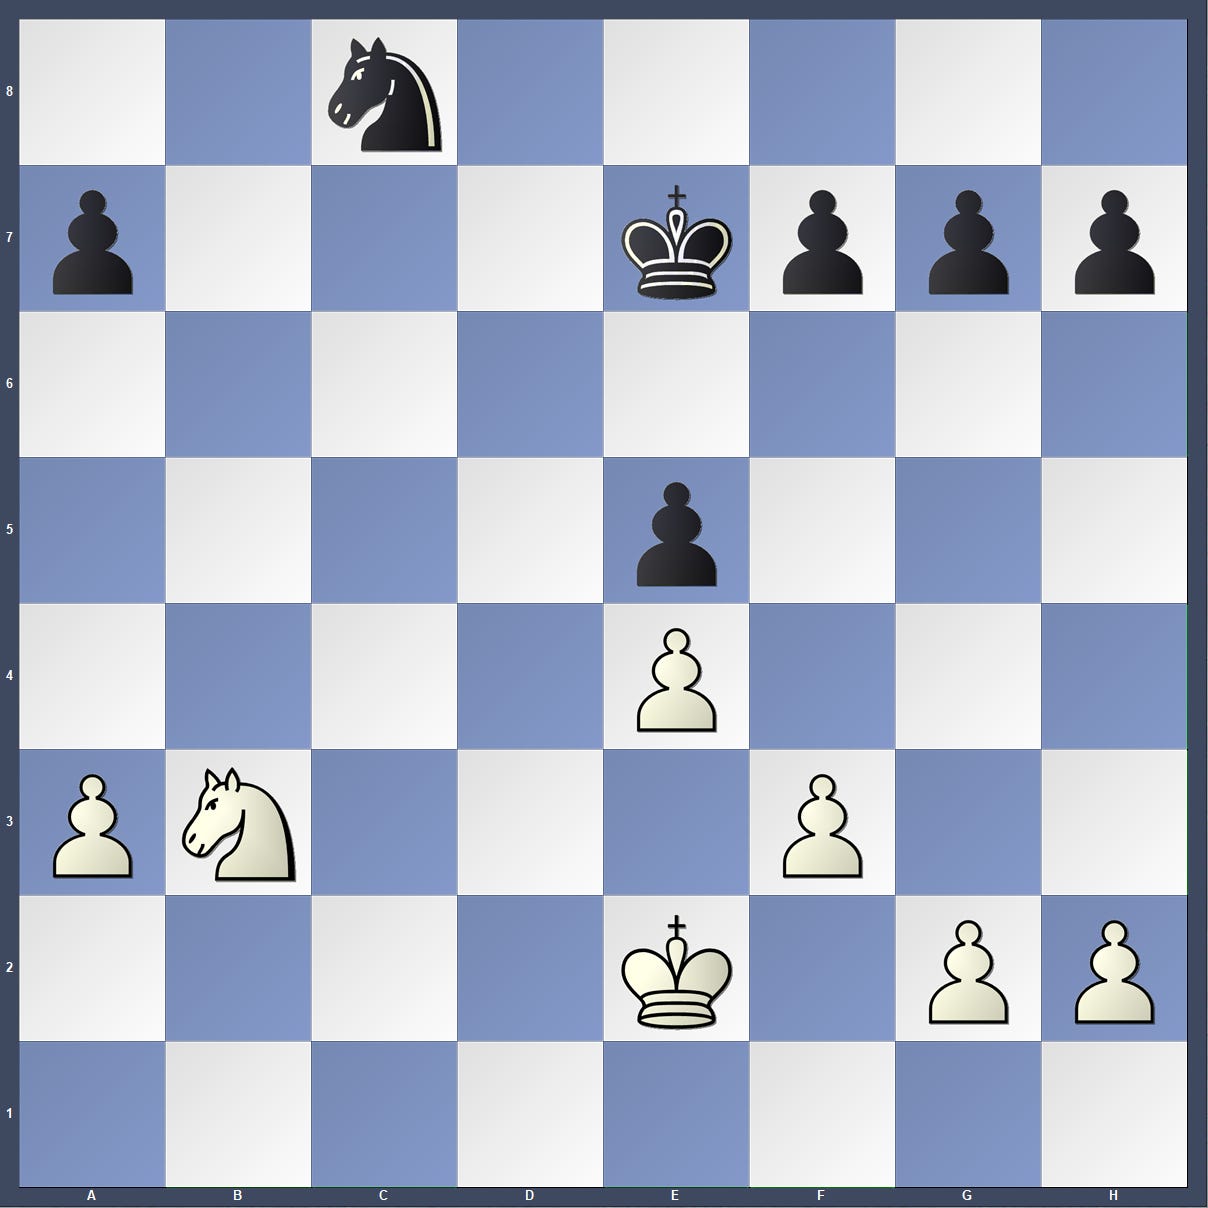 Humpy Koneru - Chess